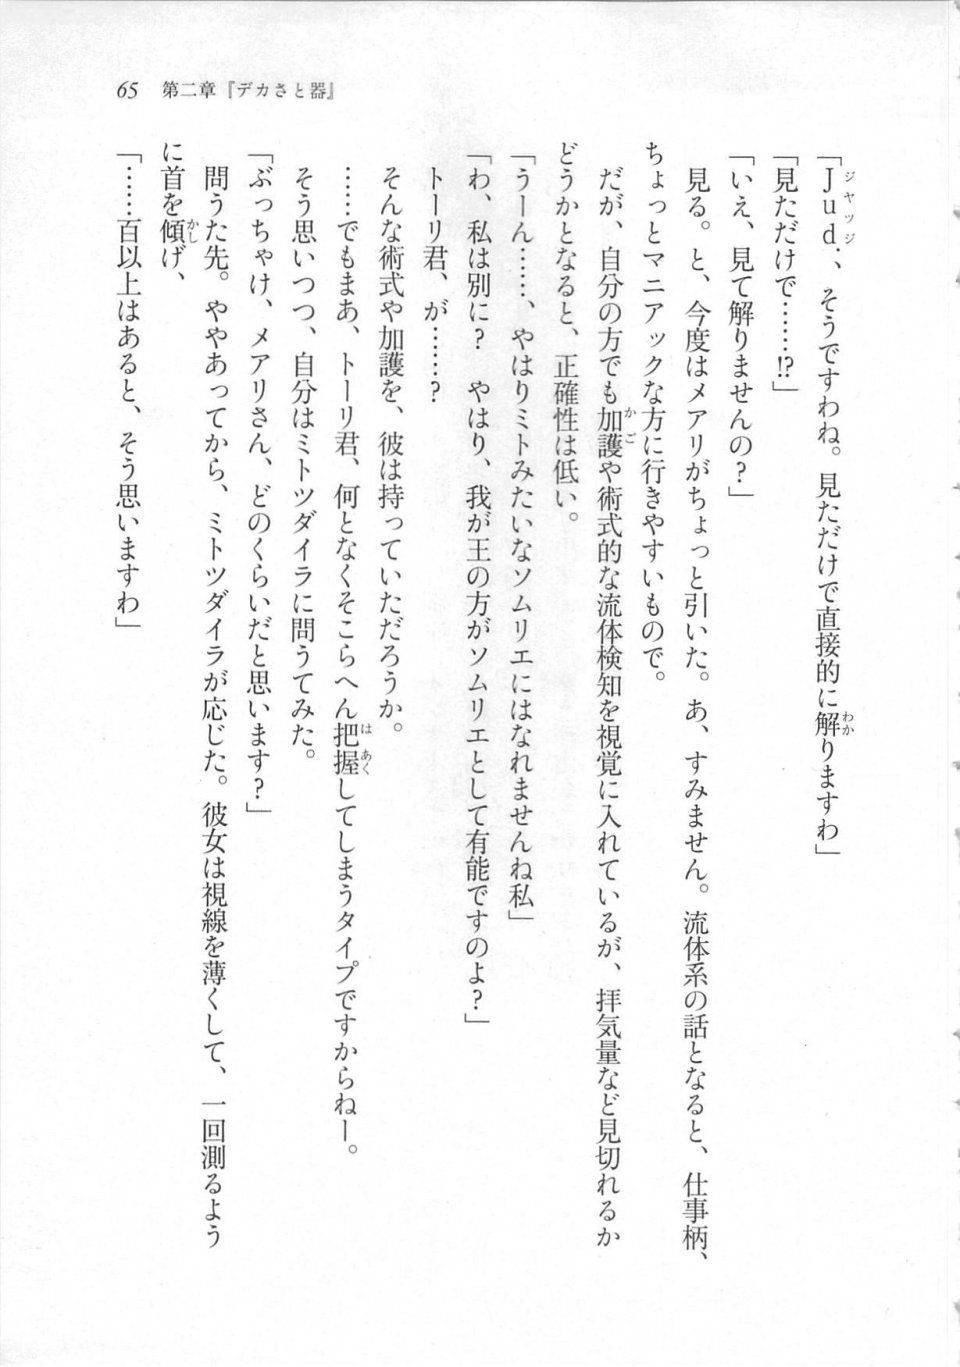 Kyoukai Senjou no Horizon LN Sidestory Vol 3 - Photo #69